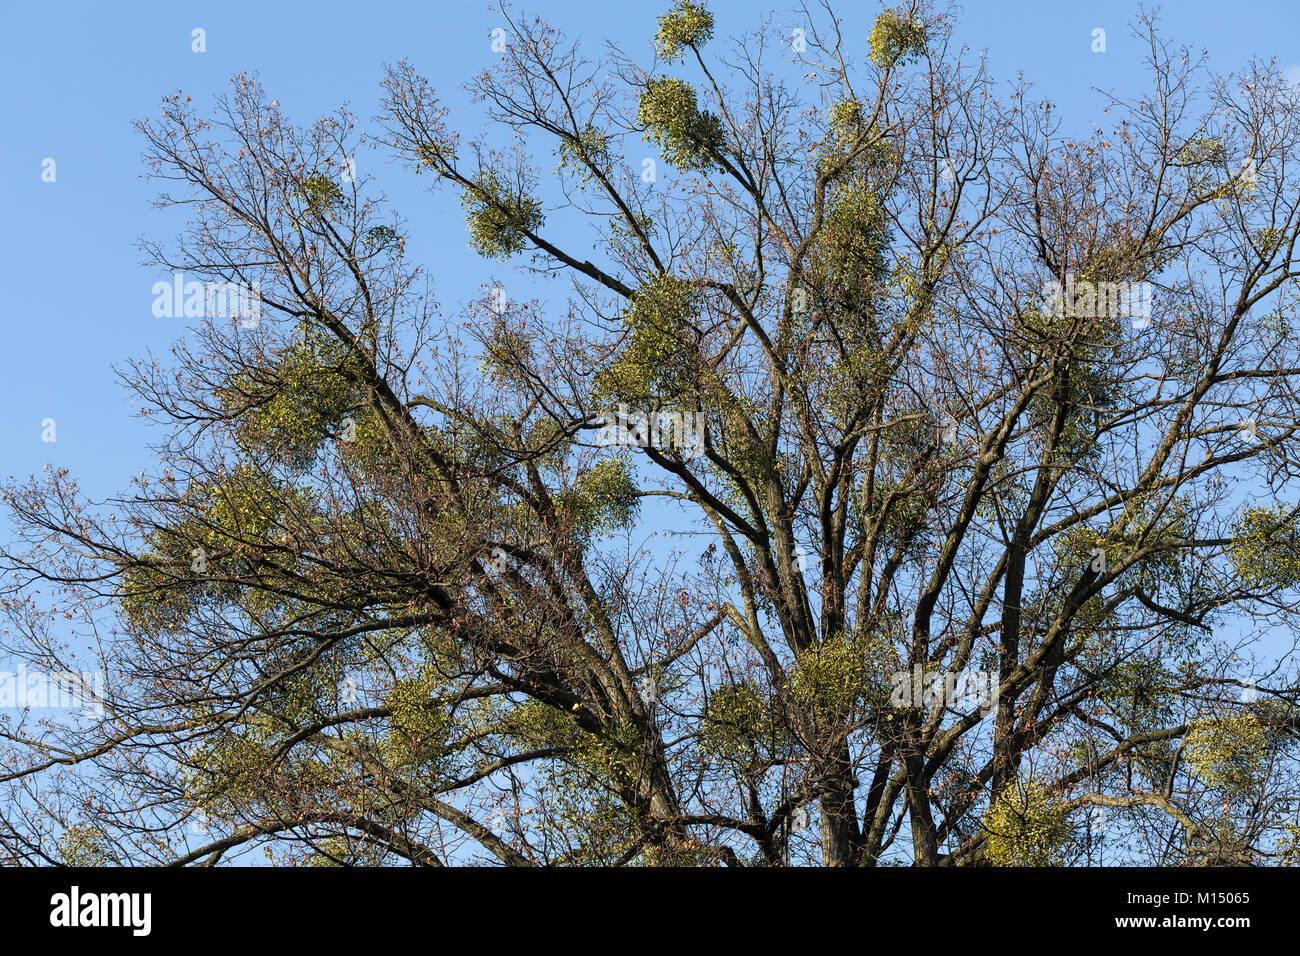 Autumn tree with european mistletoe Stock Photo